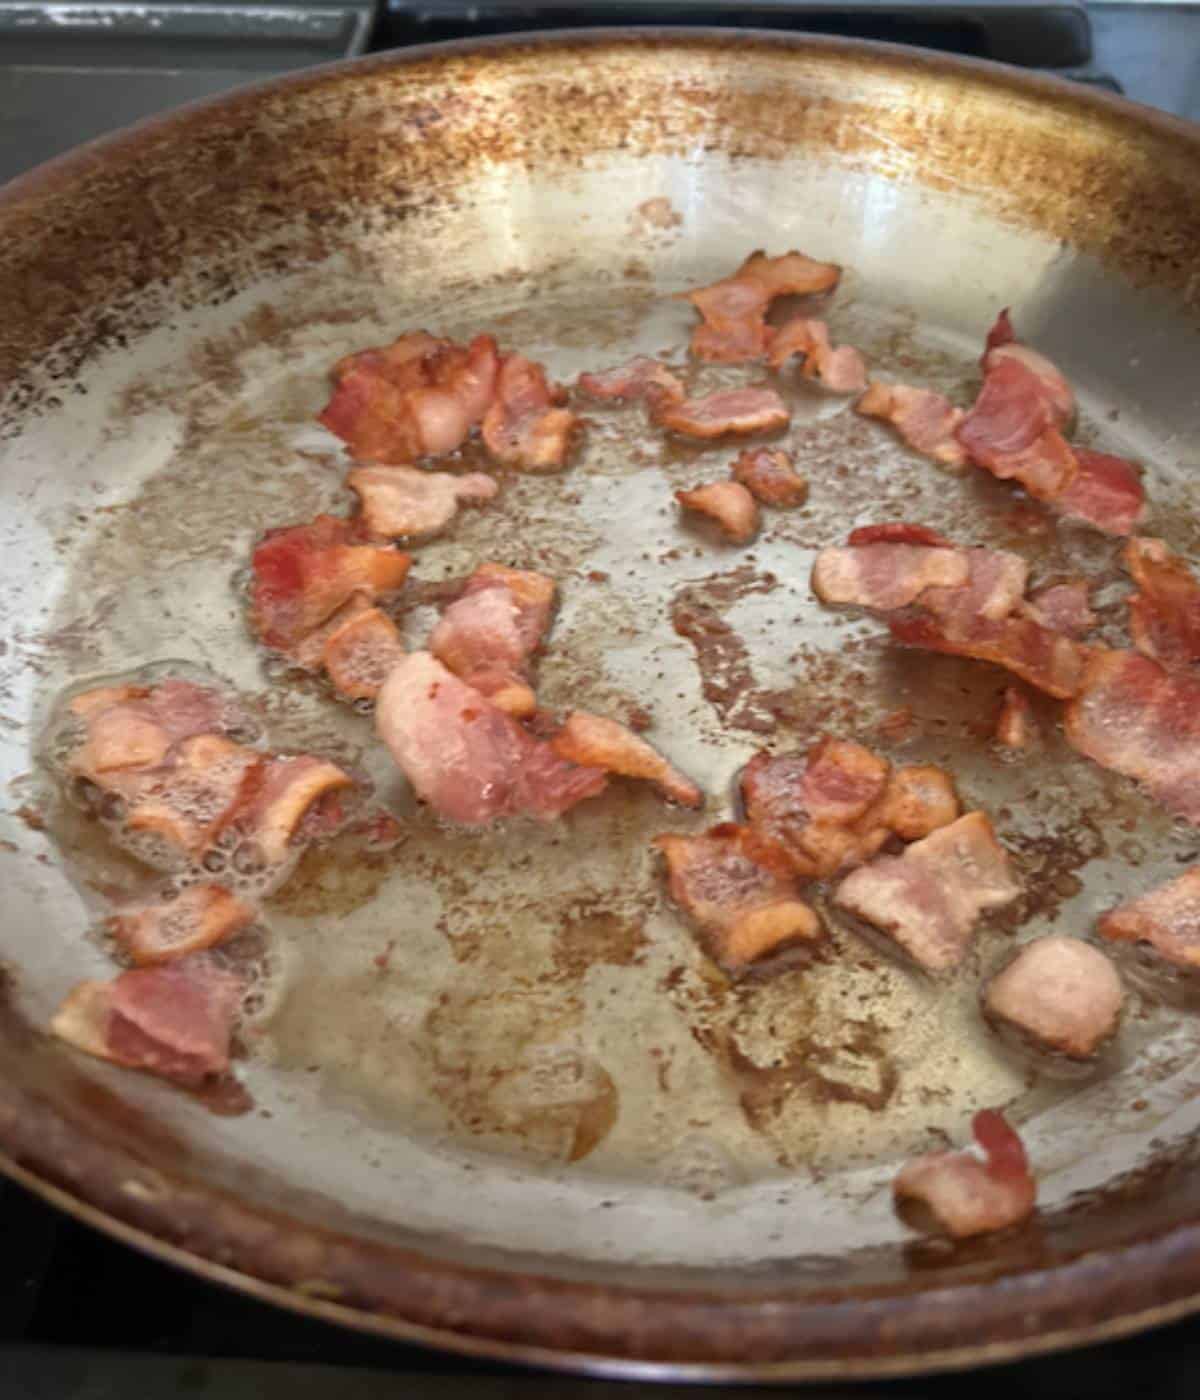 Bacon sautéing in pan.